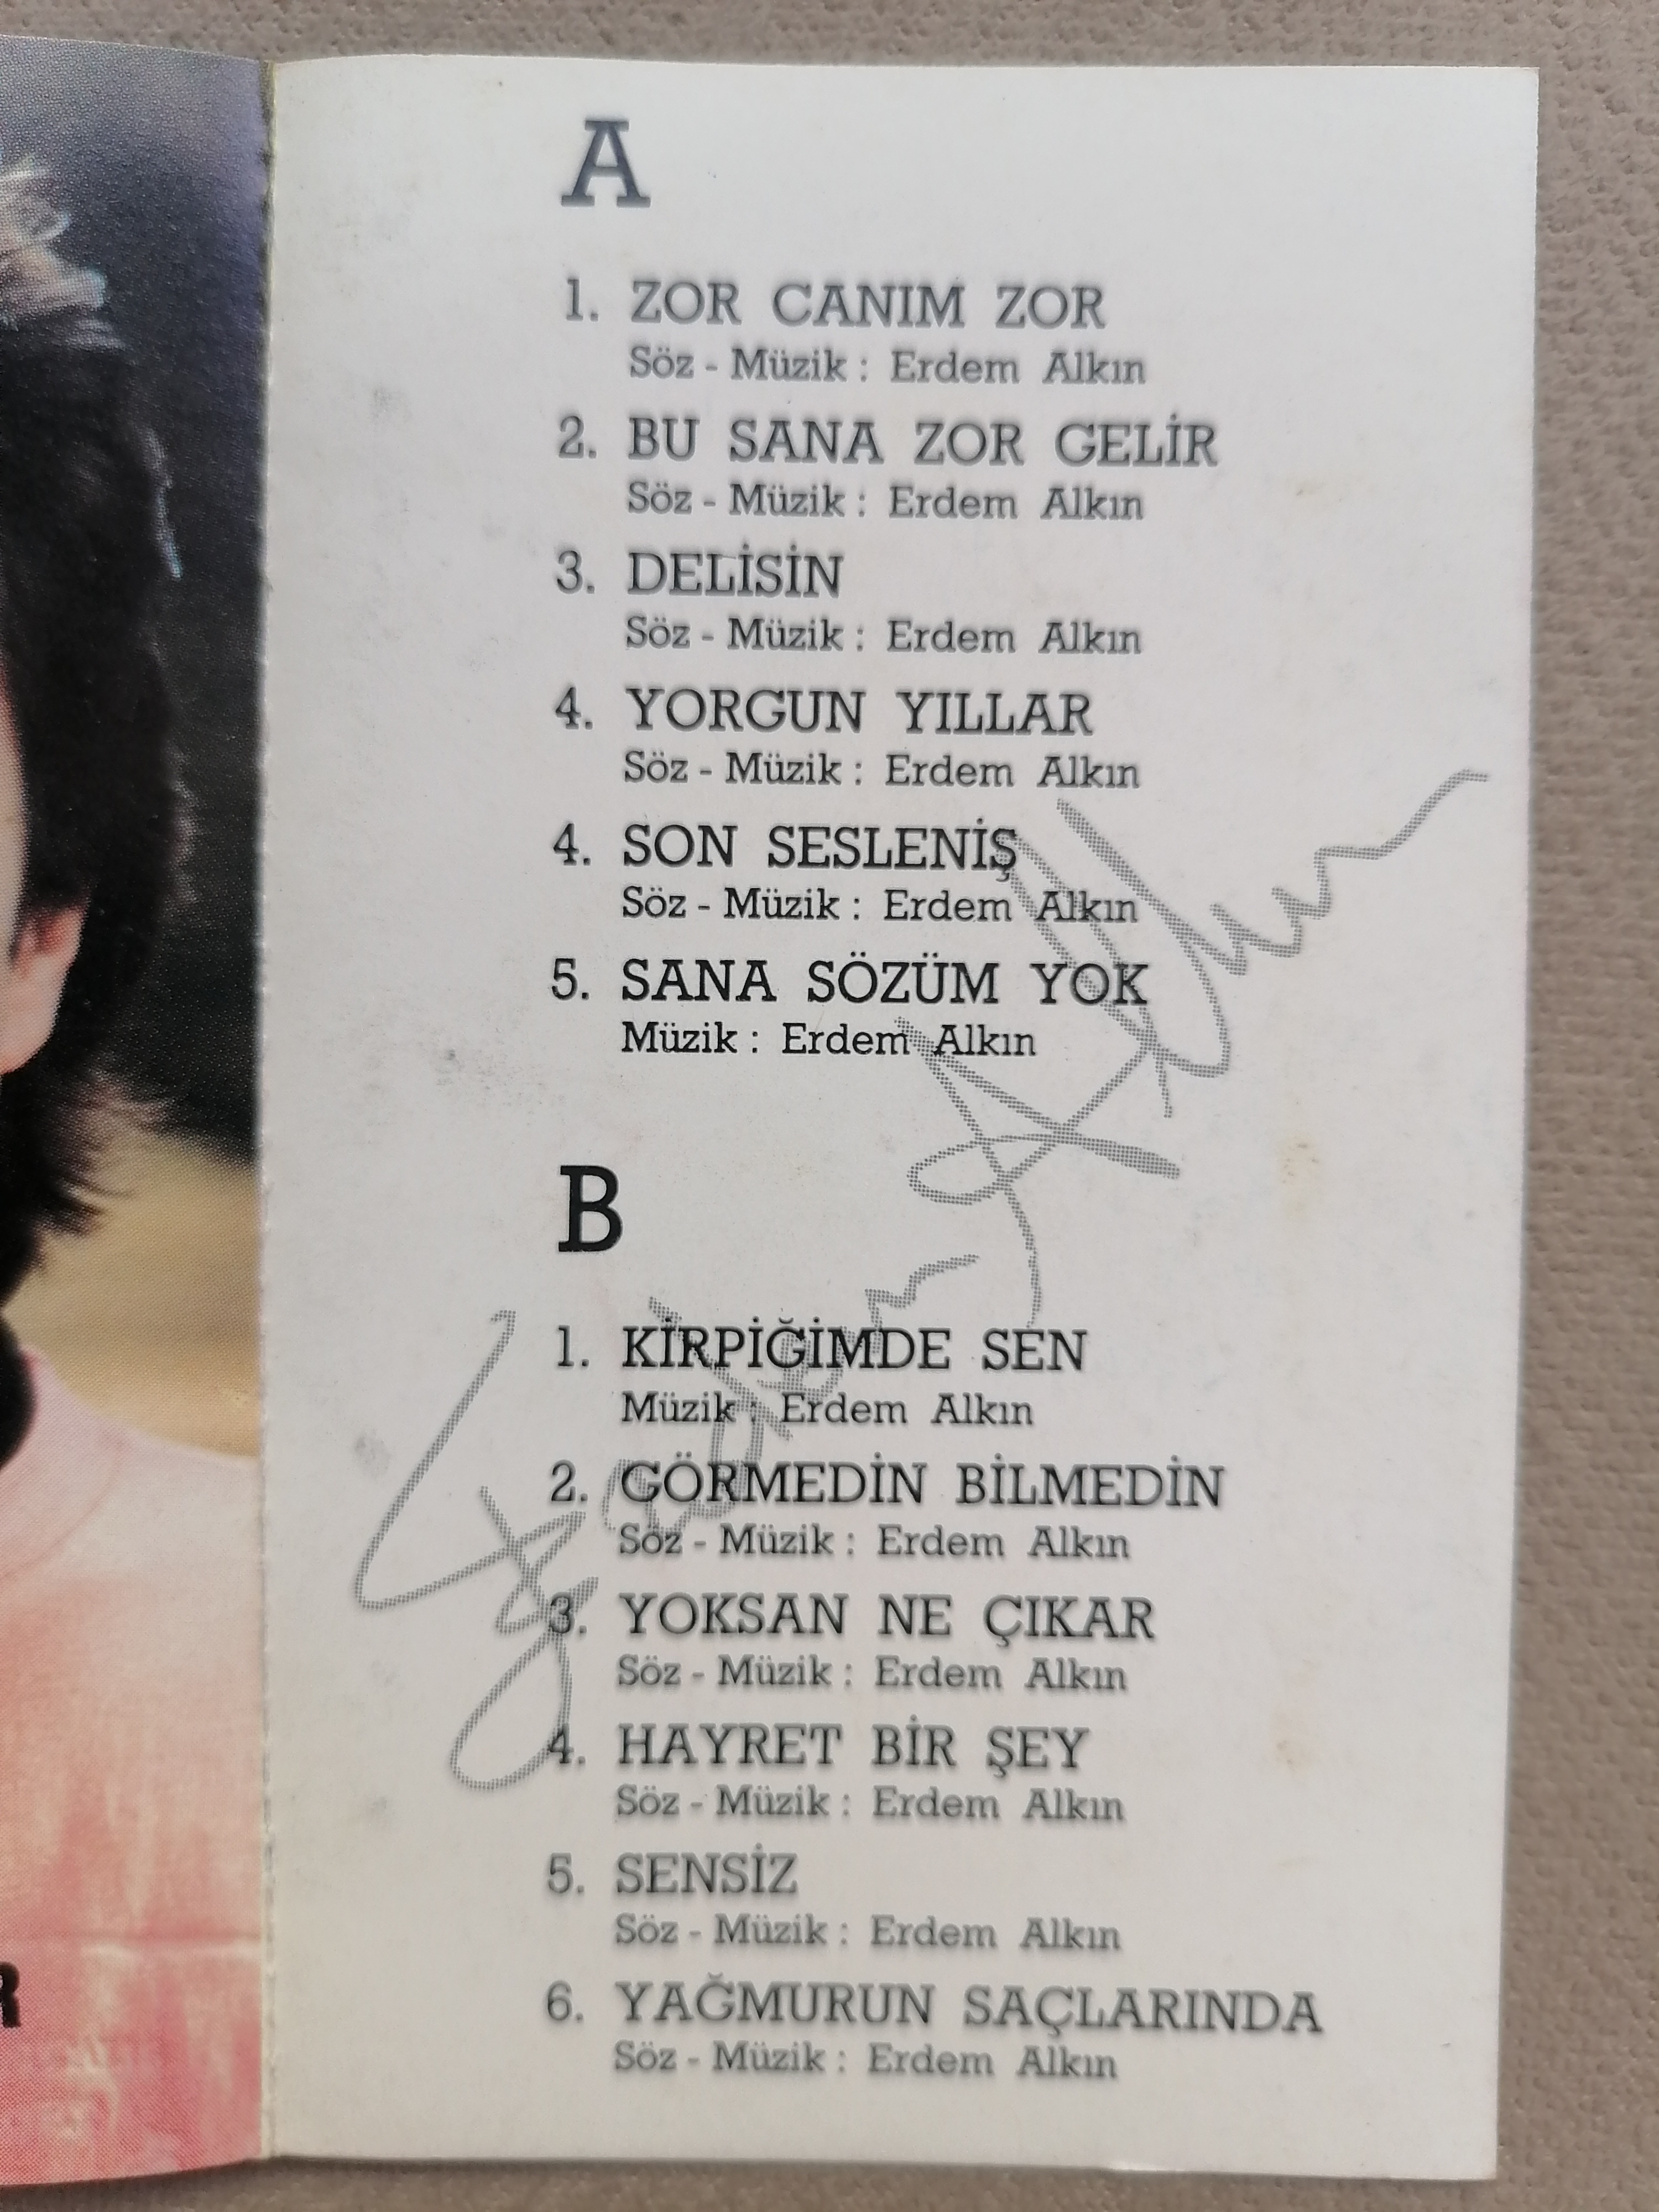 ERDEM ALKIN - Bu Sene Zor Gelir - 1990 Türkiye Basım Kaset Albüm